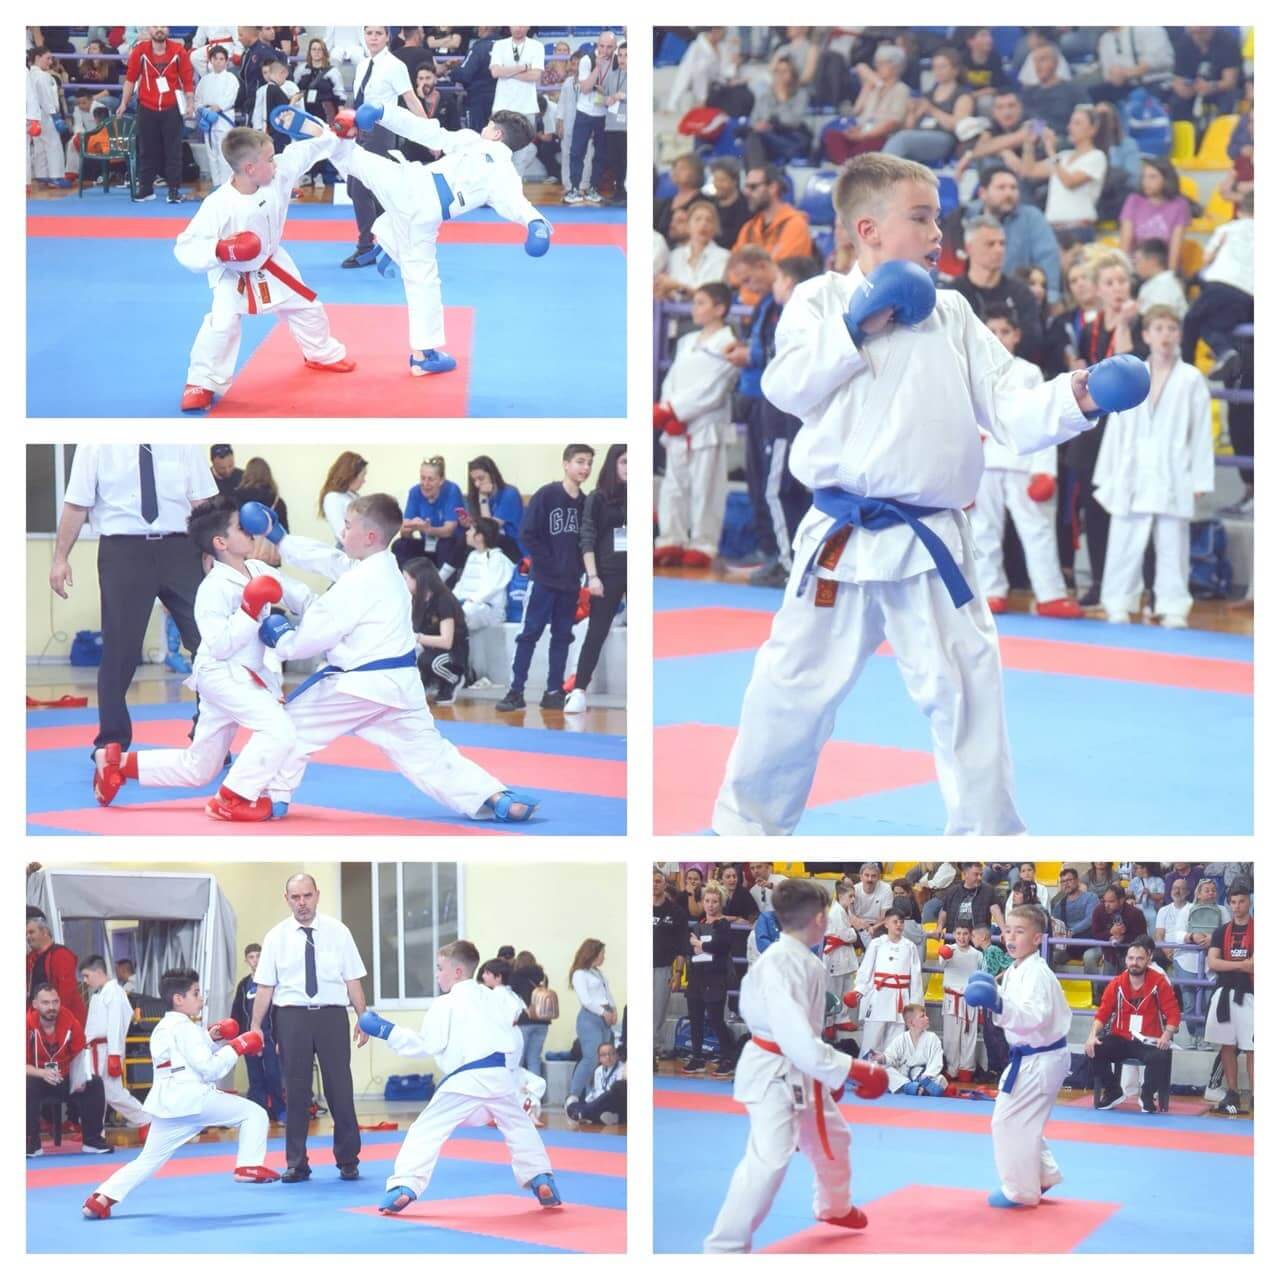 victorious-karate-psachna-panellinio-protathlima-paidon-korasidon-2024-7